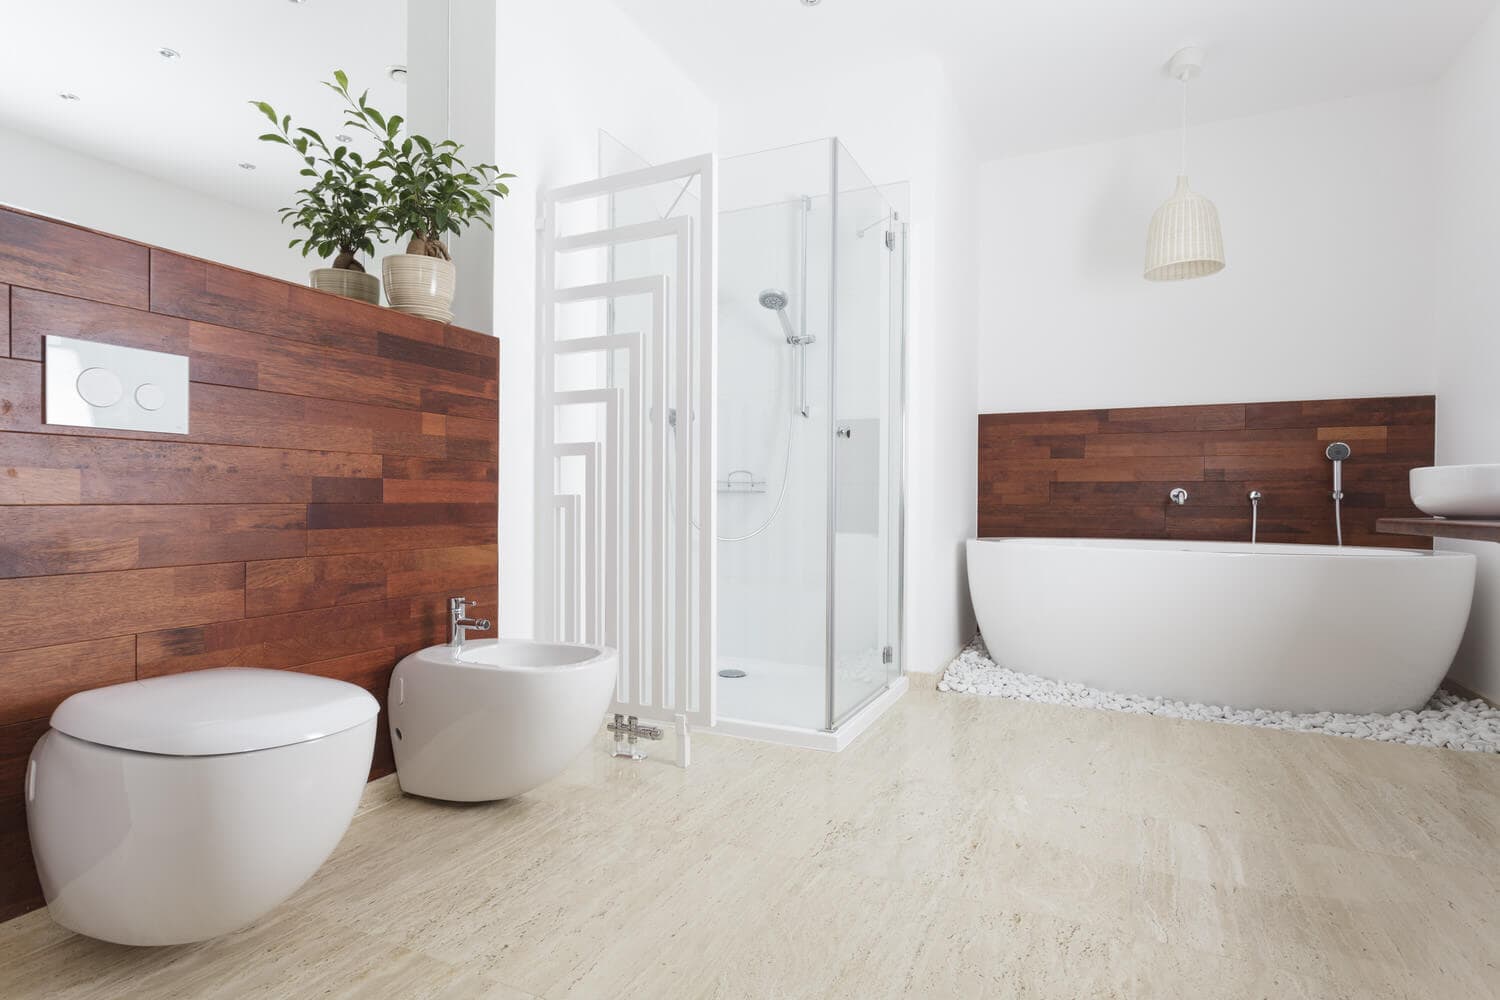 Wissenswertes zu Holz im Badezimmer › HeimHelden